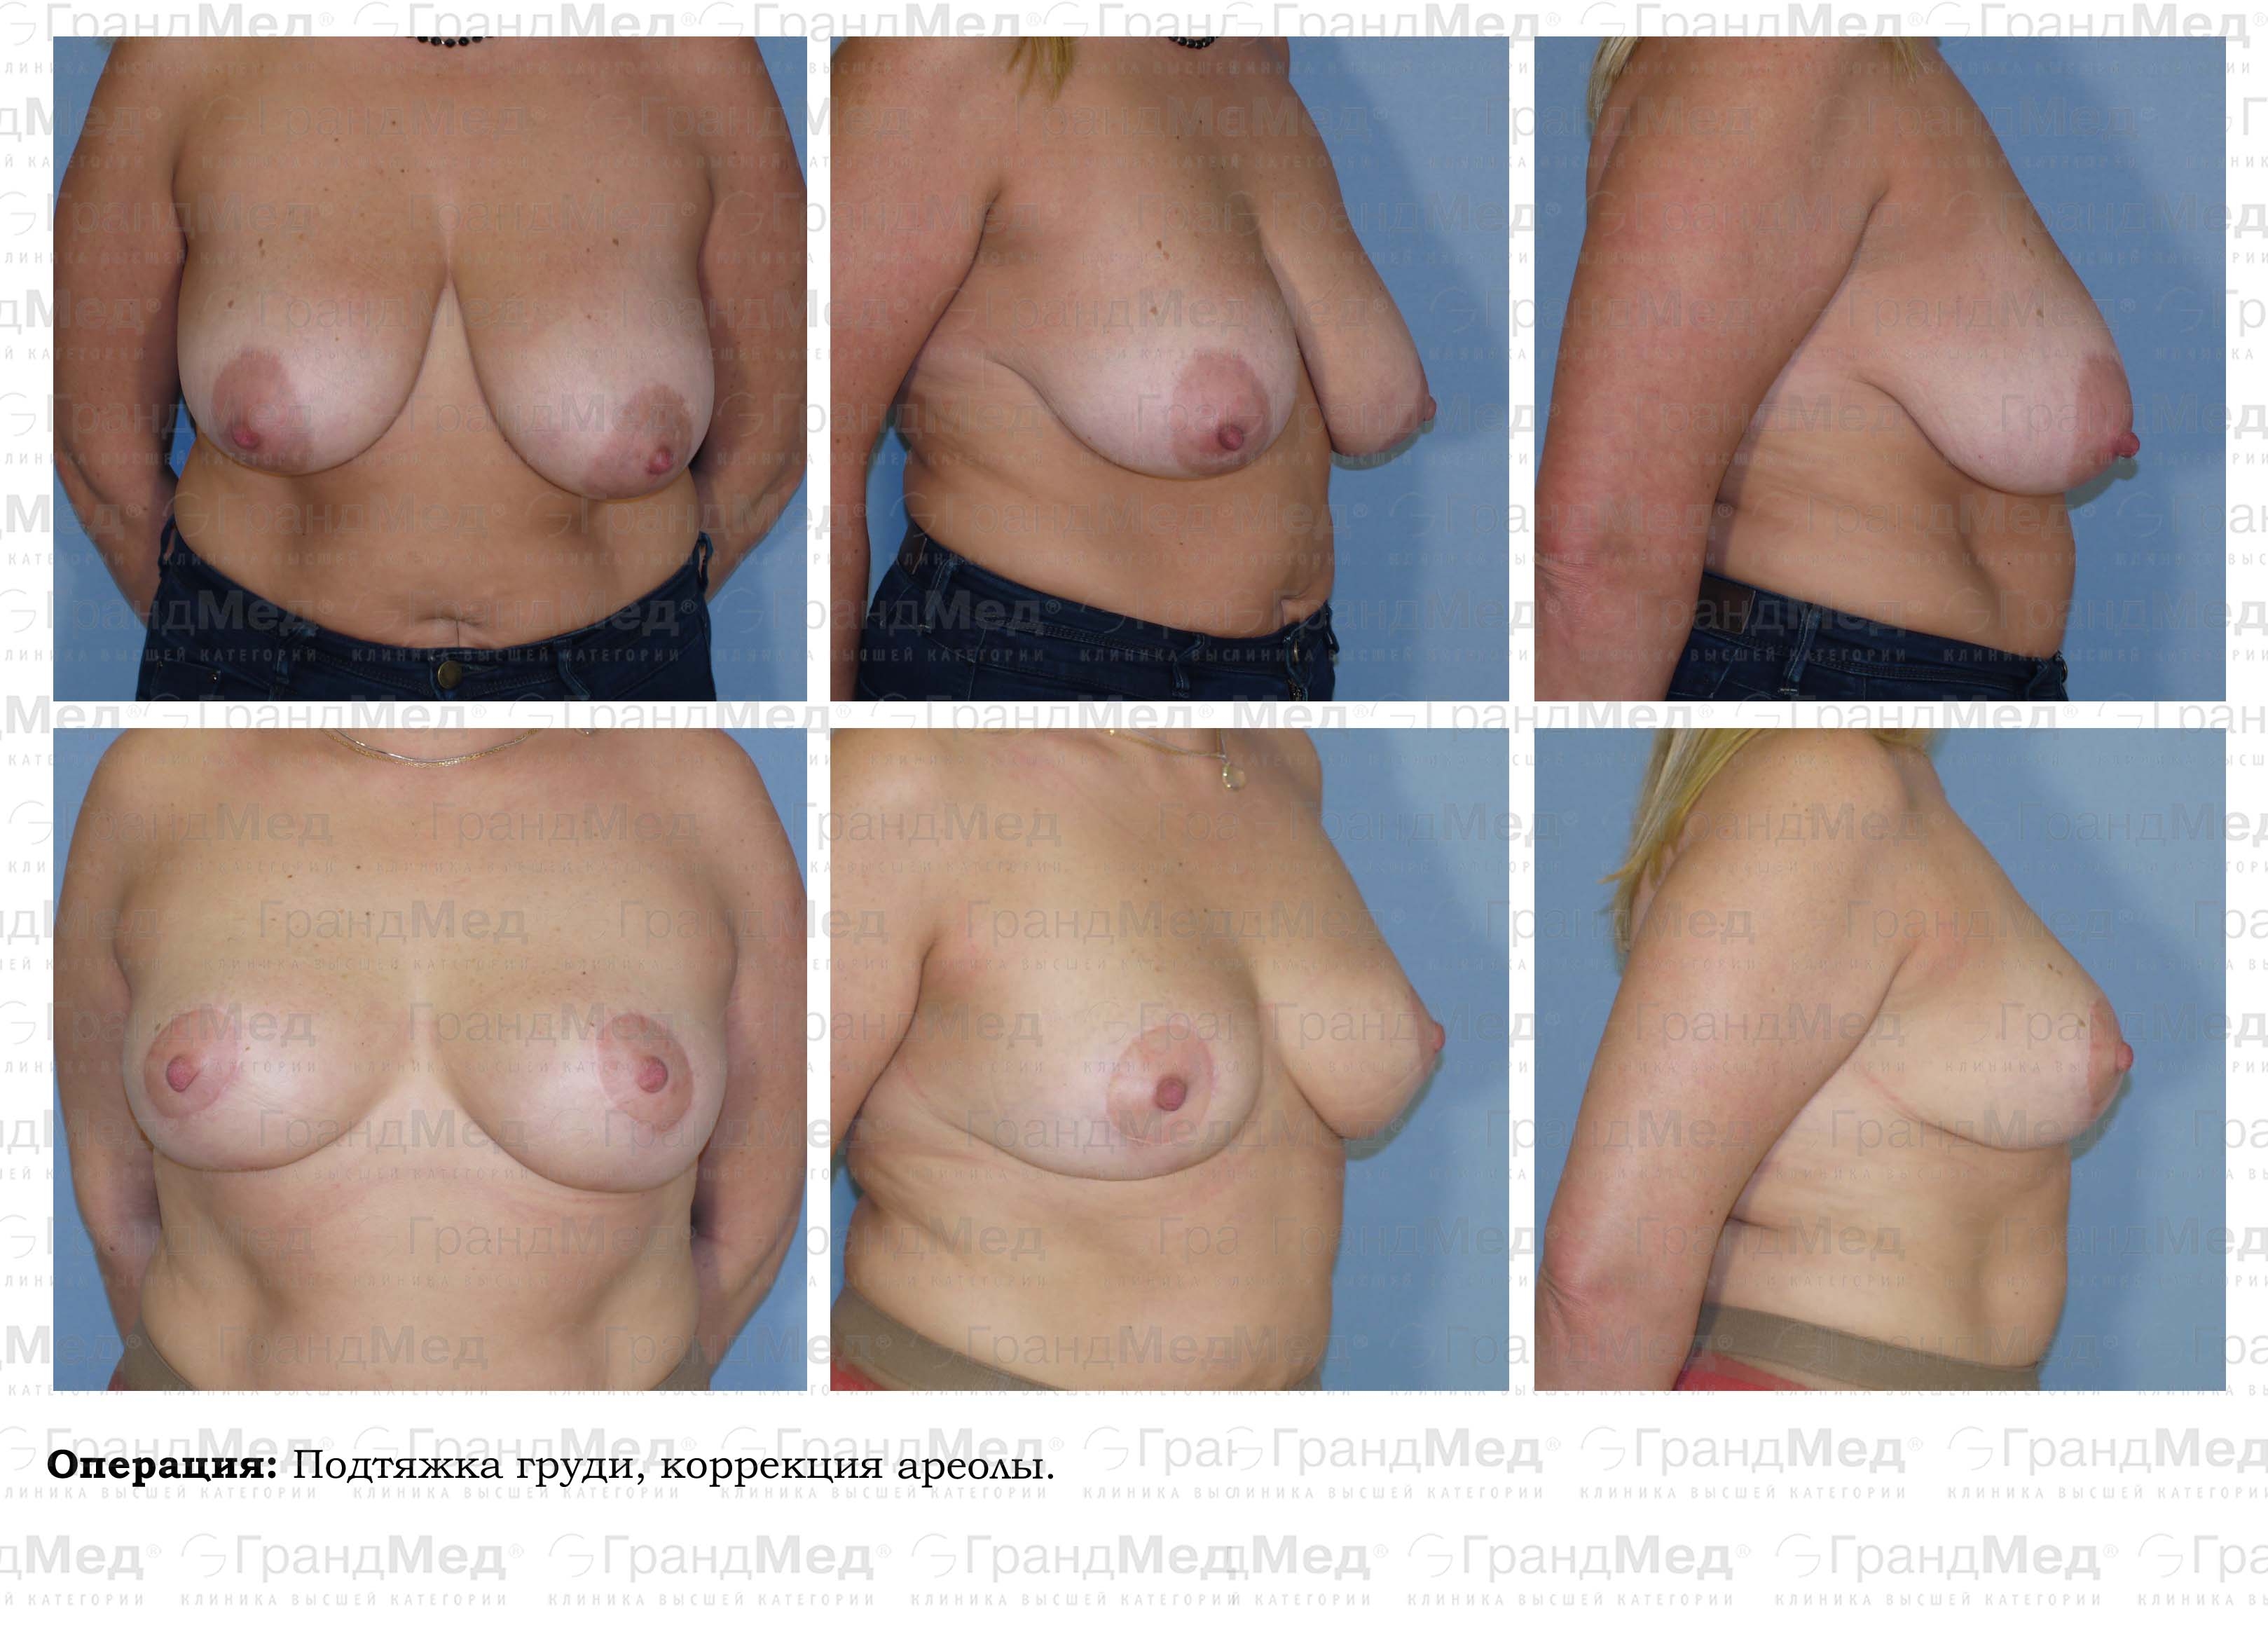 операция по подтяжке груди у женщин фото 105